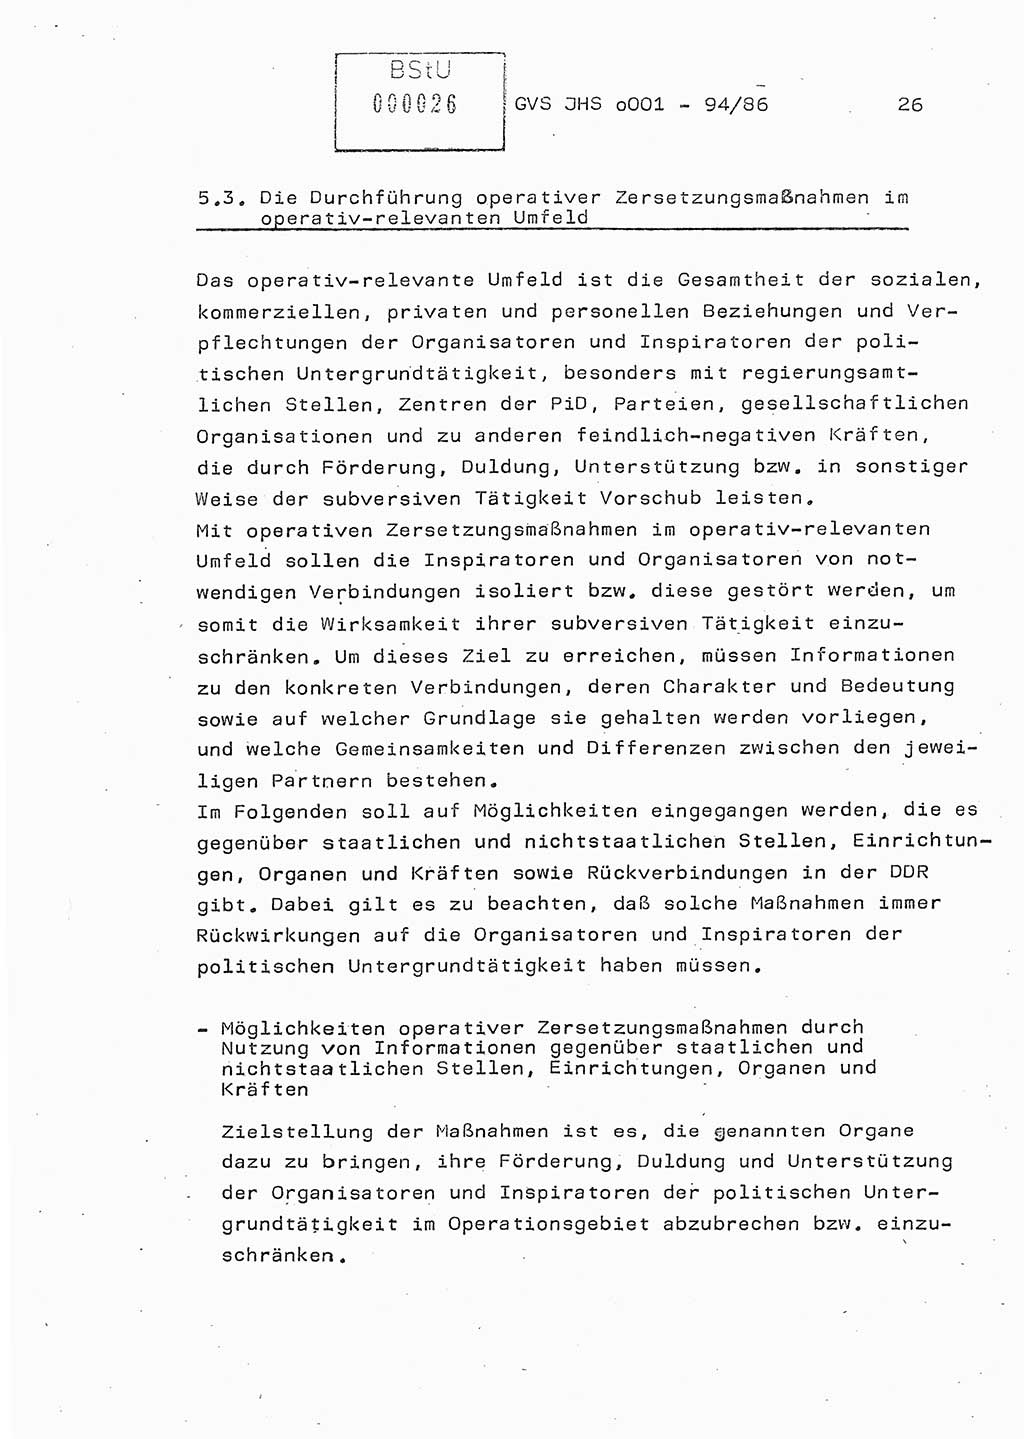 Diplomarbeit Oberleutnant Volkmar Pechmann (HA ⅩⅩ/5), Ministerium für Staatssicherheit (MfS) [Deutsche Demokratische Republik (DDR)], Juristische Hochschule (JHS), Geheime Verschlußsache (GVS) o001-94/86, Potsdam 1986, Blatt 26 (Dipl.-Arb. MfS DDR JHS GVS o001-94/86 1986, Bl. 26)